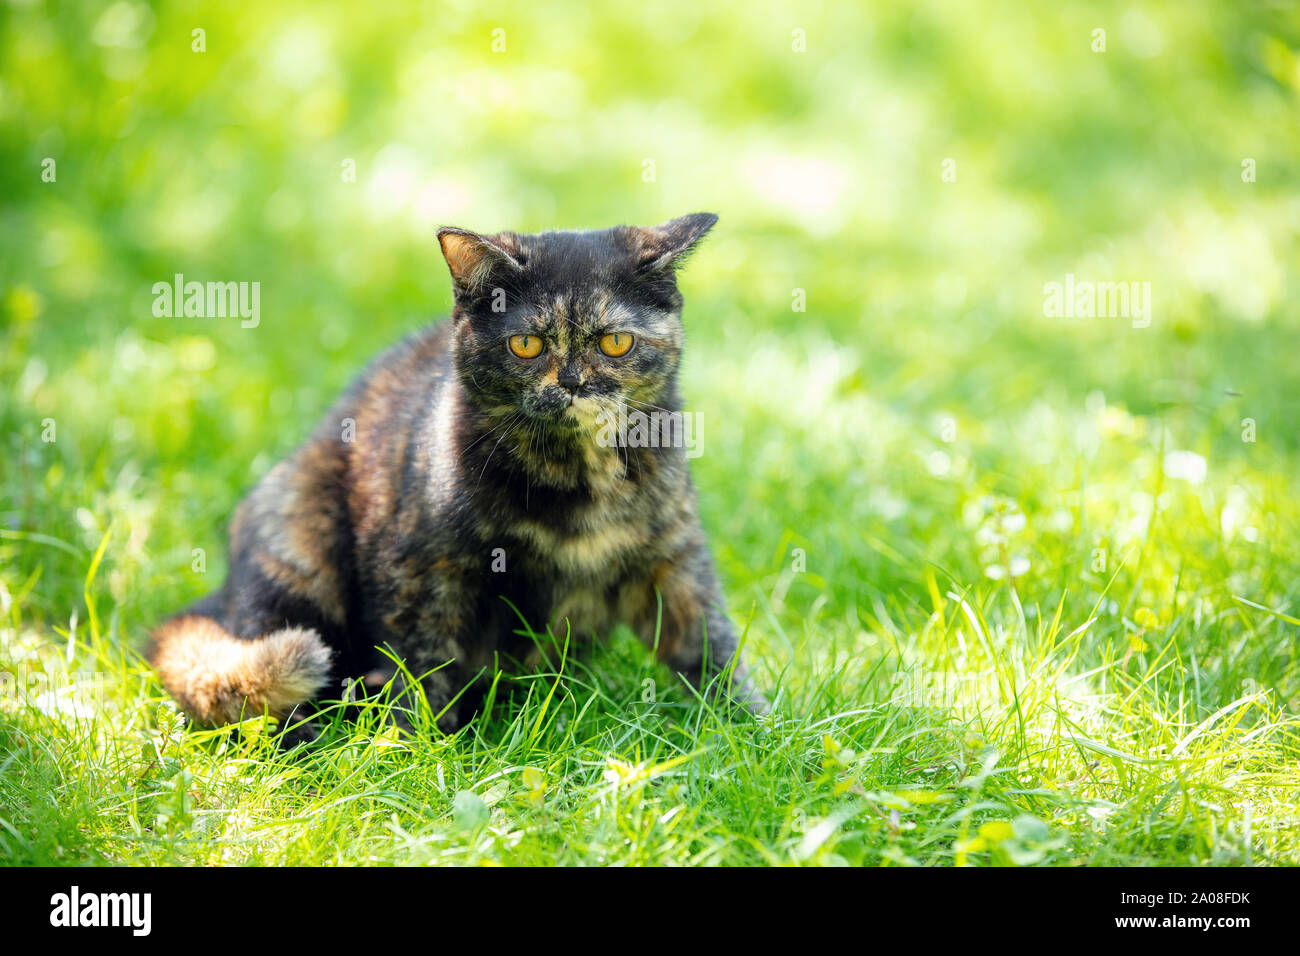 Precioso gatito tortoiseshell sentados en el césped en un jardín de verano Foto de stock